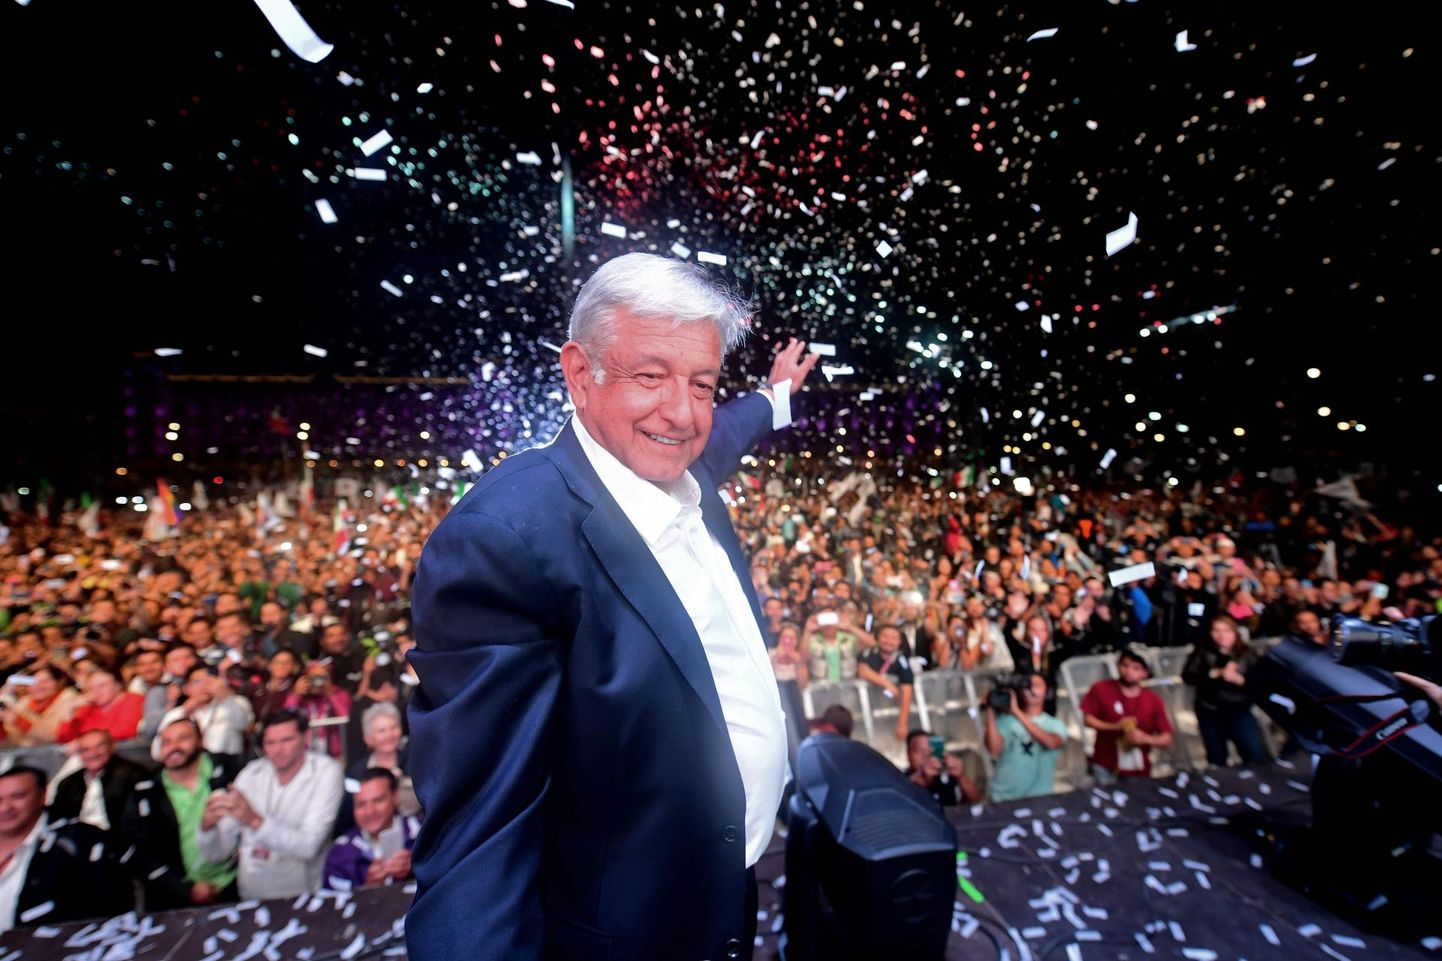 Mehhiko presidendiks valitud Andrés Manuel López Obrador tähistamas üleeile valimisvõitu koos oma poolehoidjatega Zócalo väljakul México kesklinnas. FOTO: Pedro Pardo/AFP/Scanpix